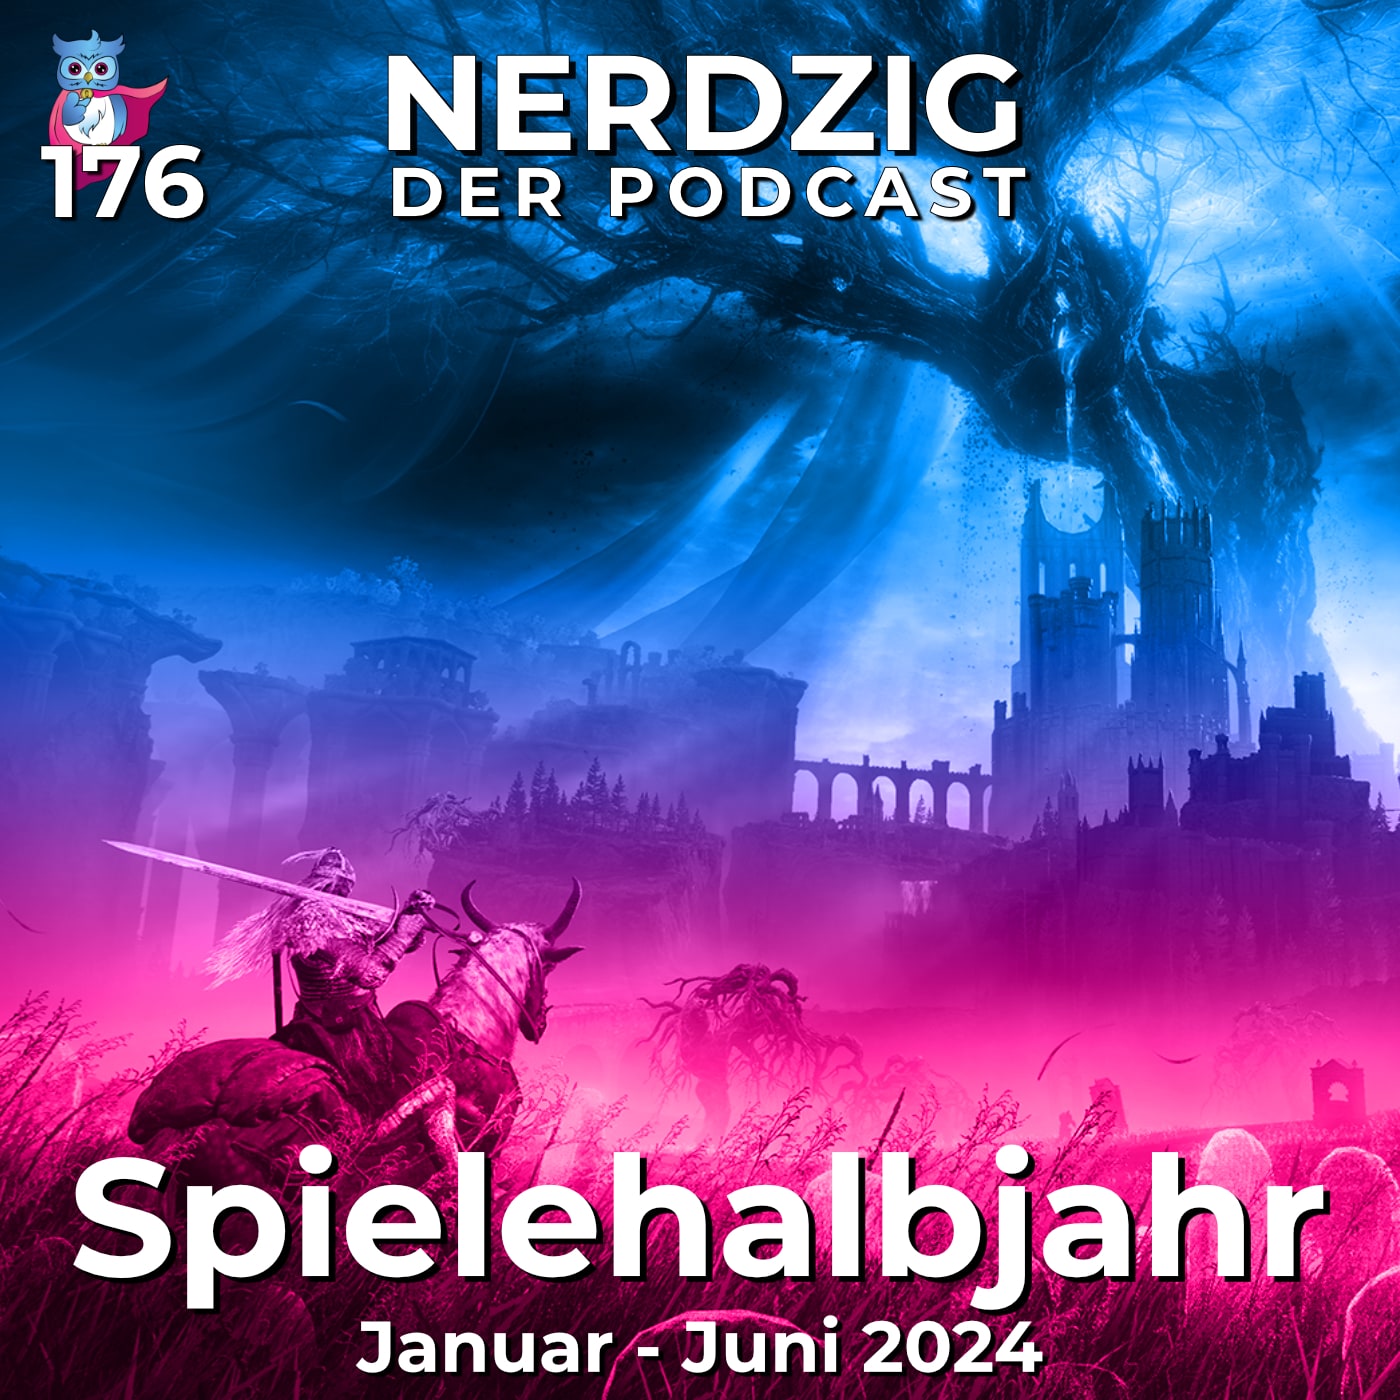 Nerdzig - Der Podcast #176 – Das Spielehalbjahr 2024 - Januar bis Juni